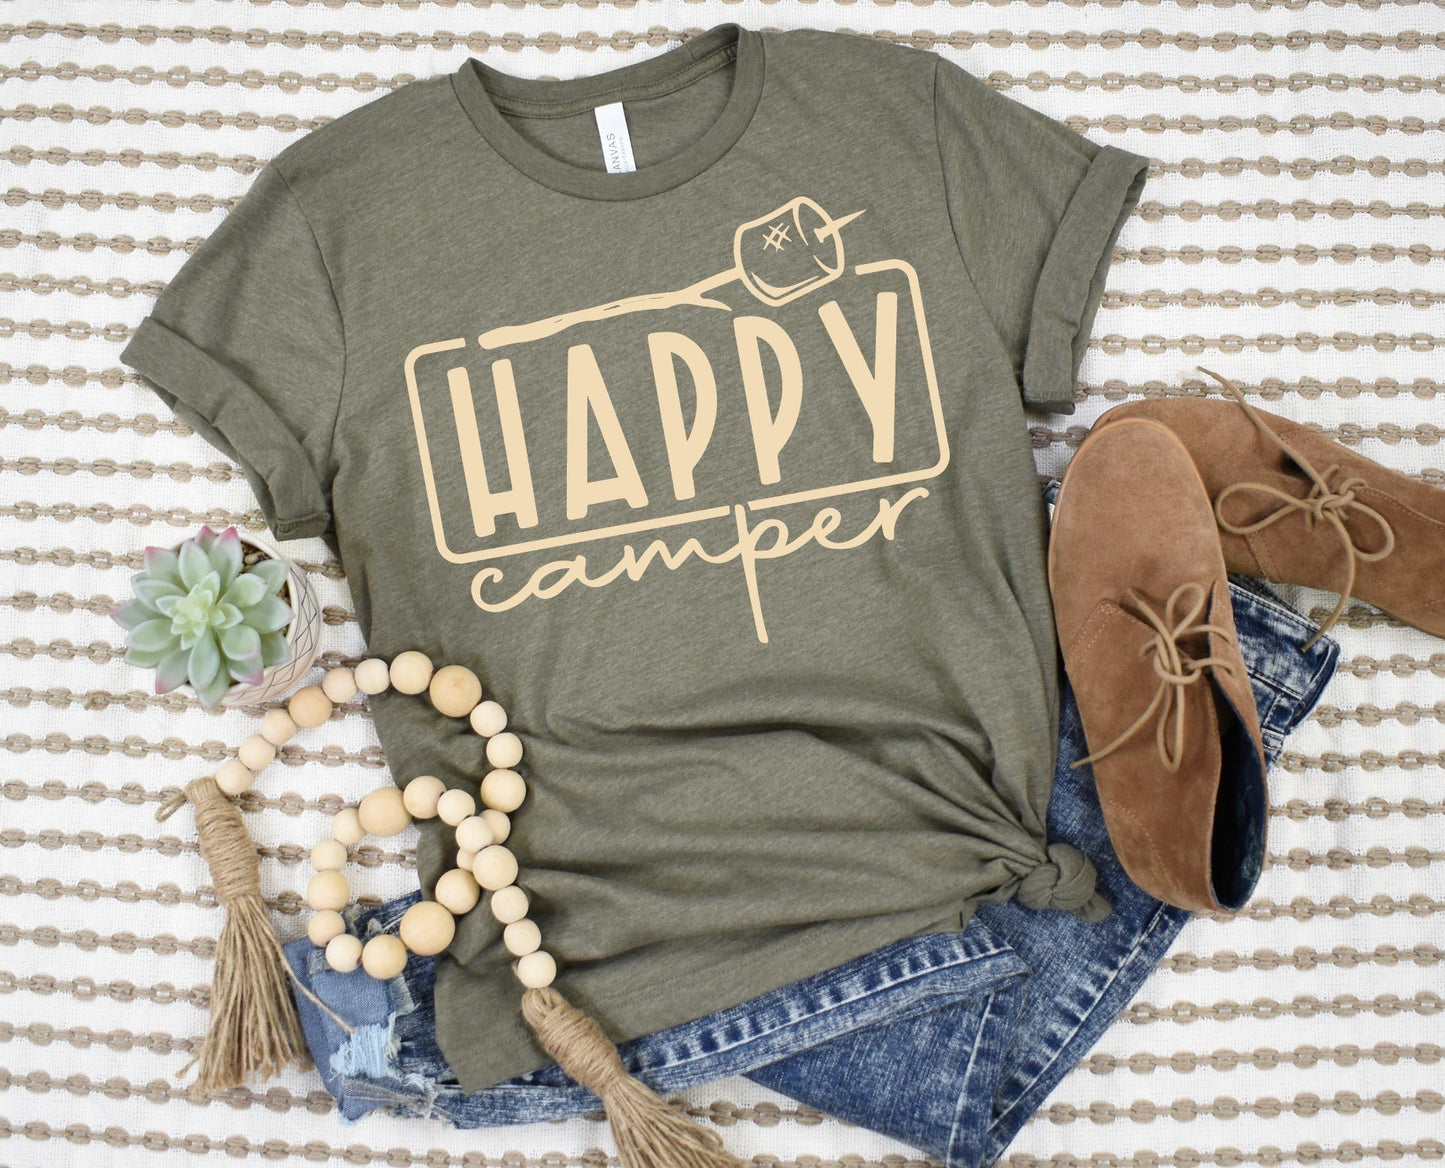 Happy camper! Preorder